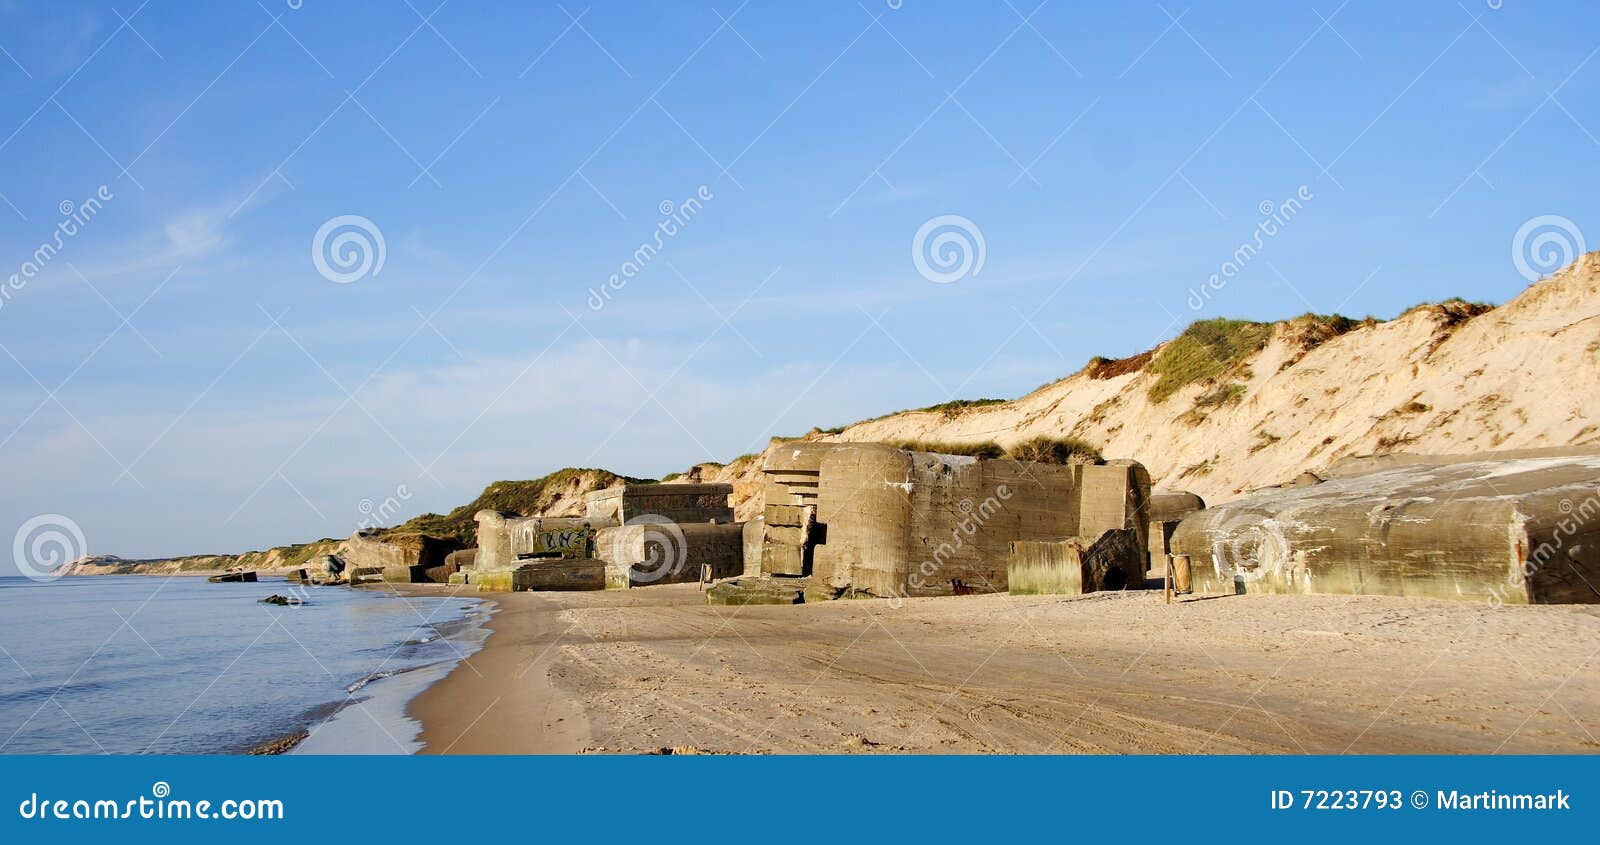 Denmark - Bunker stock image. Image of bunkers, beach ...